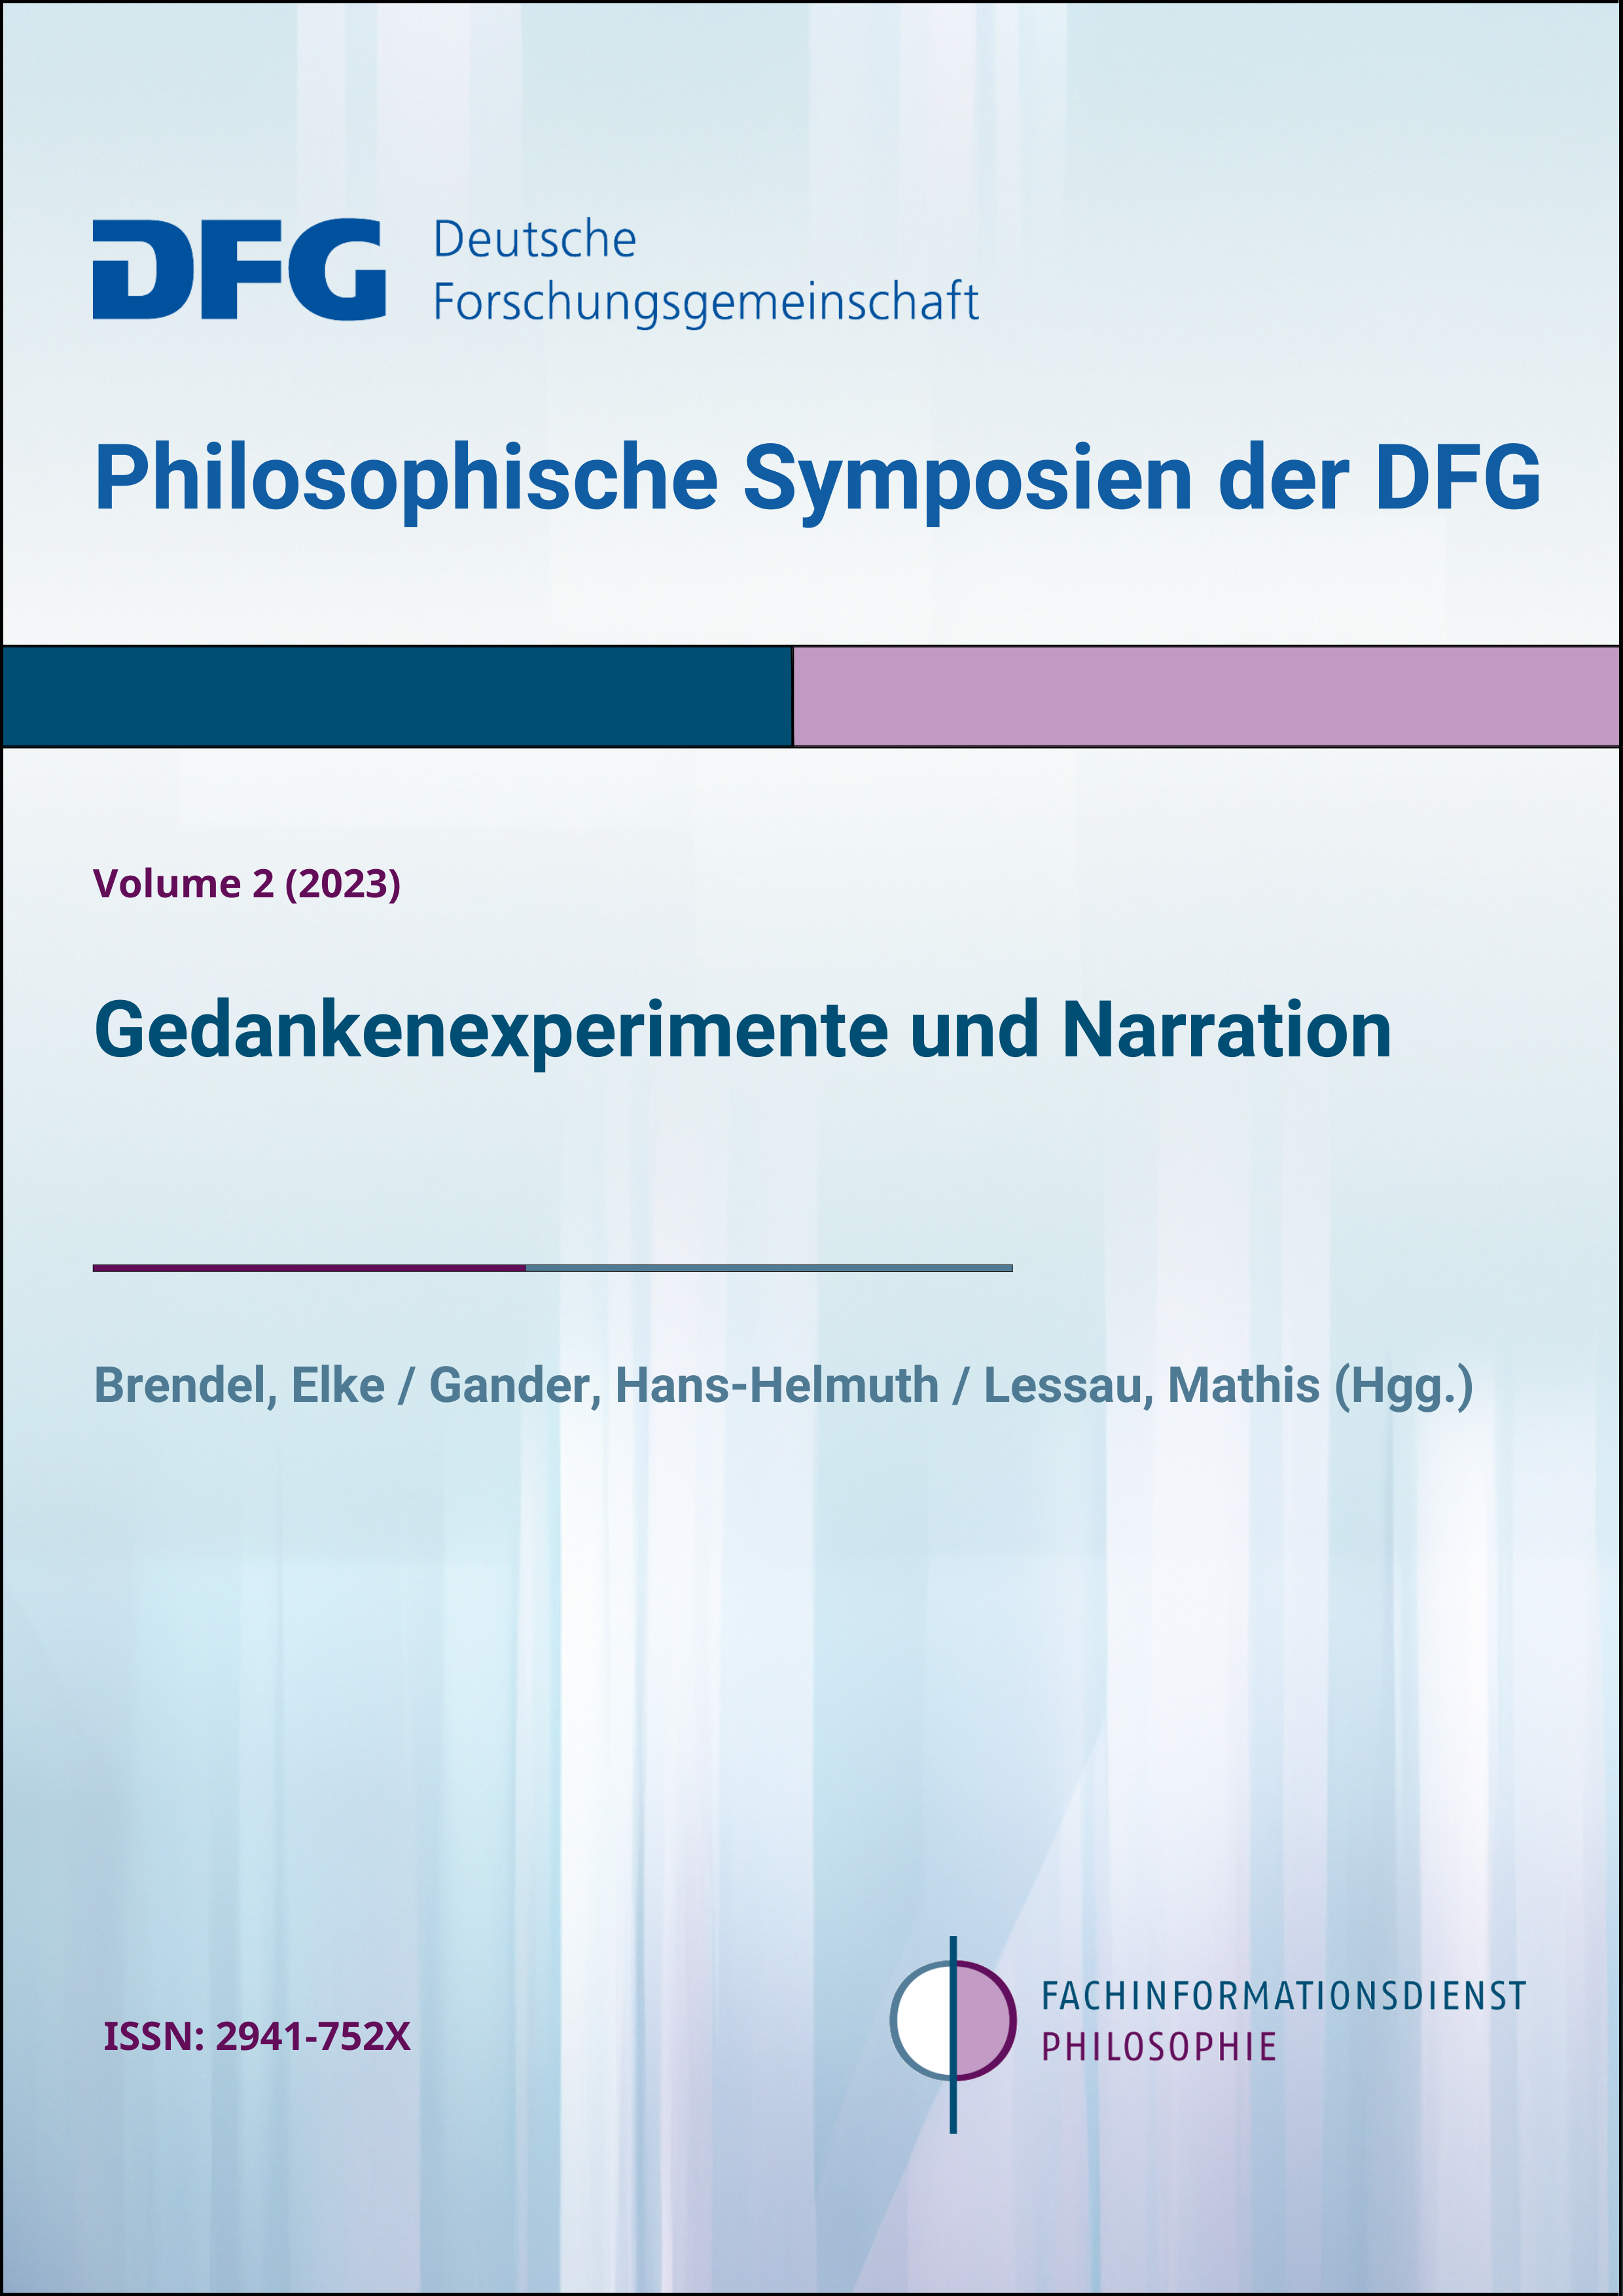 Brendel, Elke / Gander, Hans-Helmuth / Lessau, Mathis (Hgg.): Gedankenexperimente und Narration (Philosophische Symposien Bd. 2)